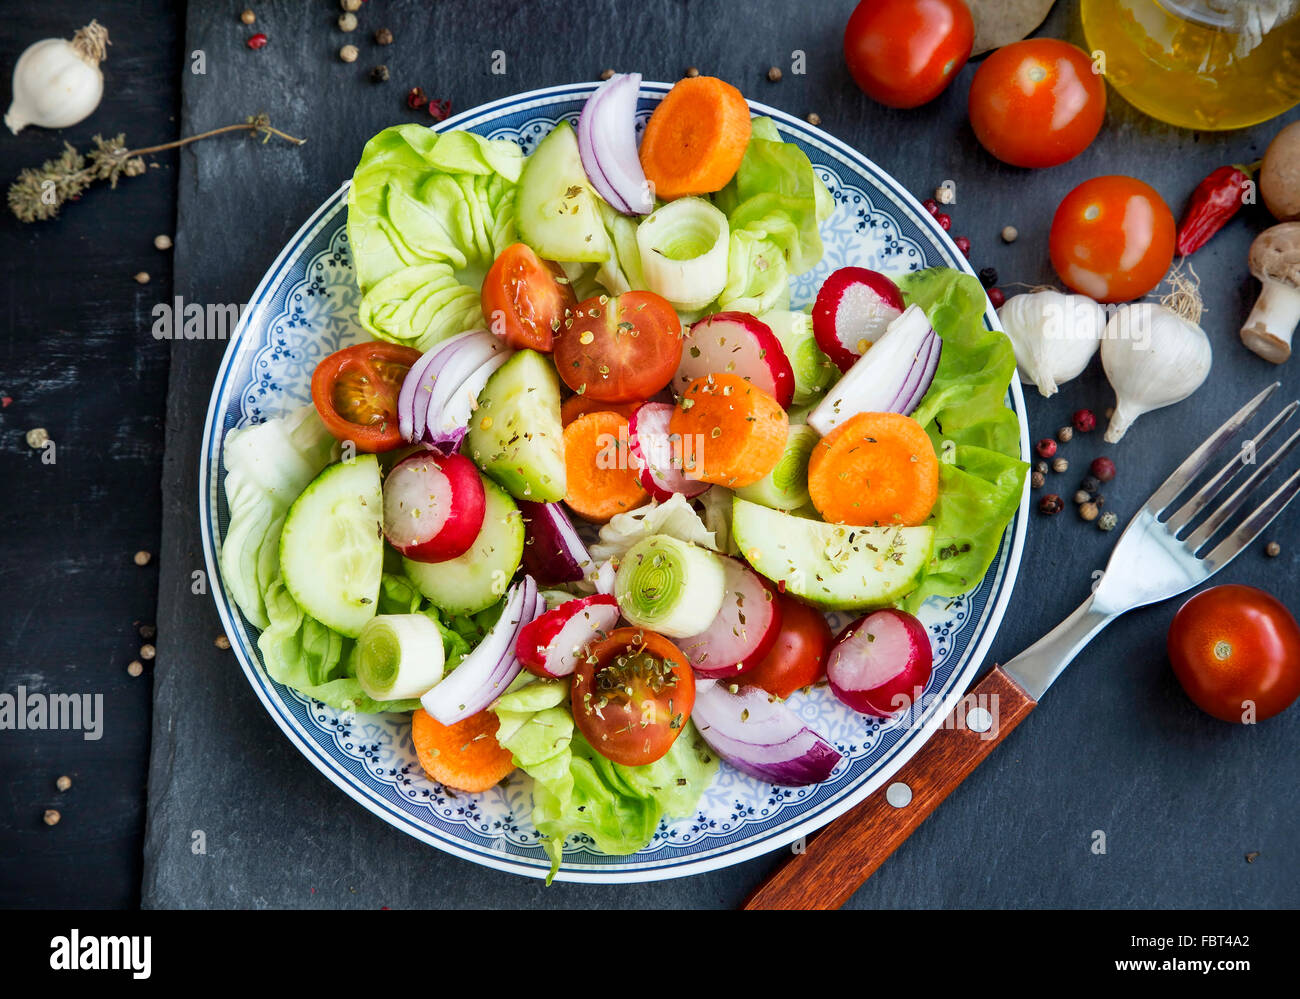 Frisches Gemüse-Salat mit Radieschen, Gurken, Tomaten, Salat, Karotten, Zwiebeln und Gewürzen mischen Stockfoto